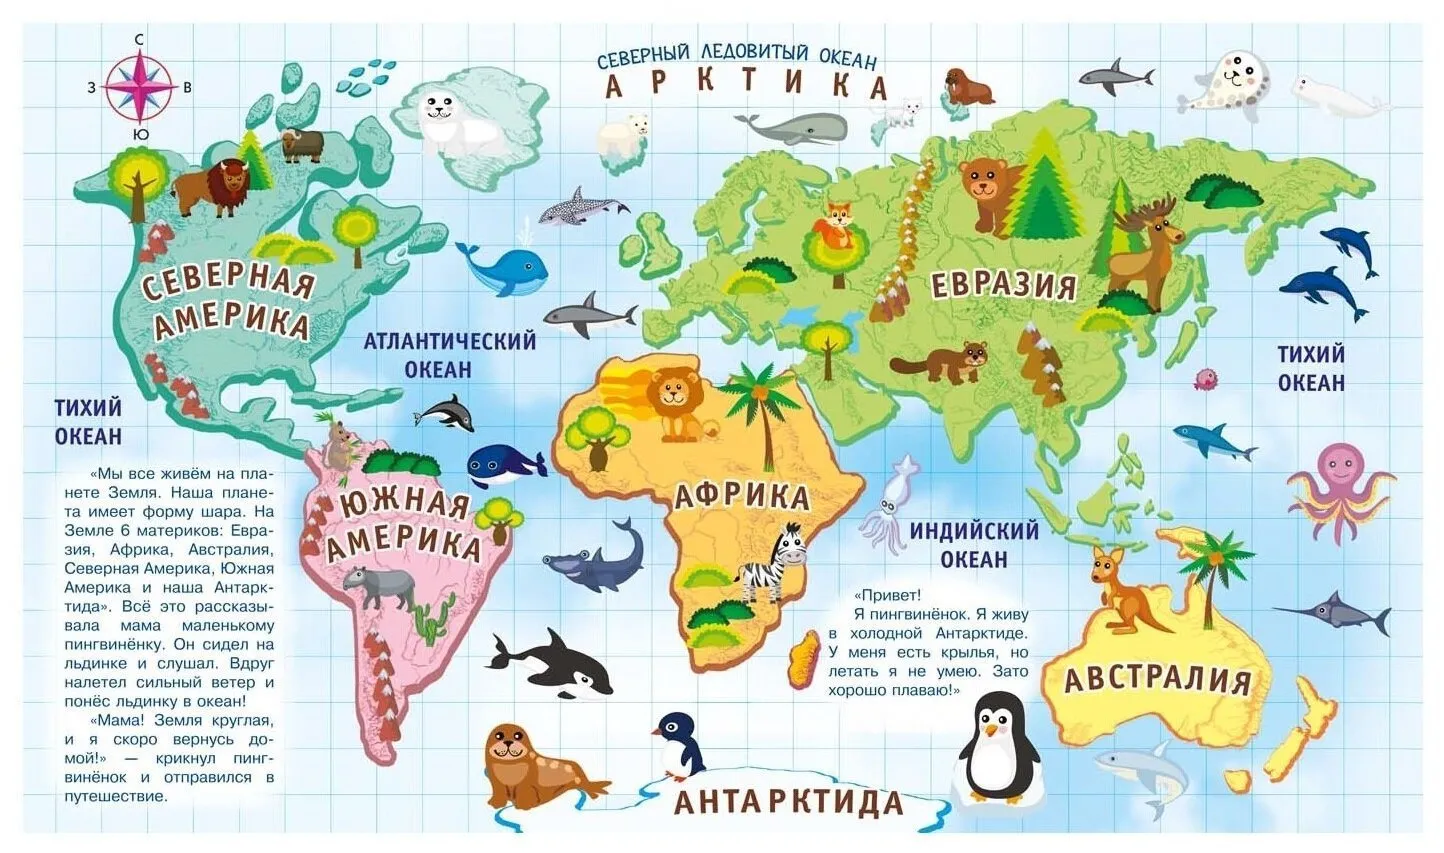 Материки земли названия на карте по окружающему. Континенты для дошкольников. Страны и континенты для детей. Материки для дошкольников. Материки с животными для детей.